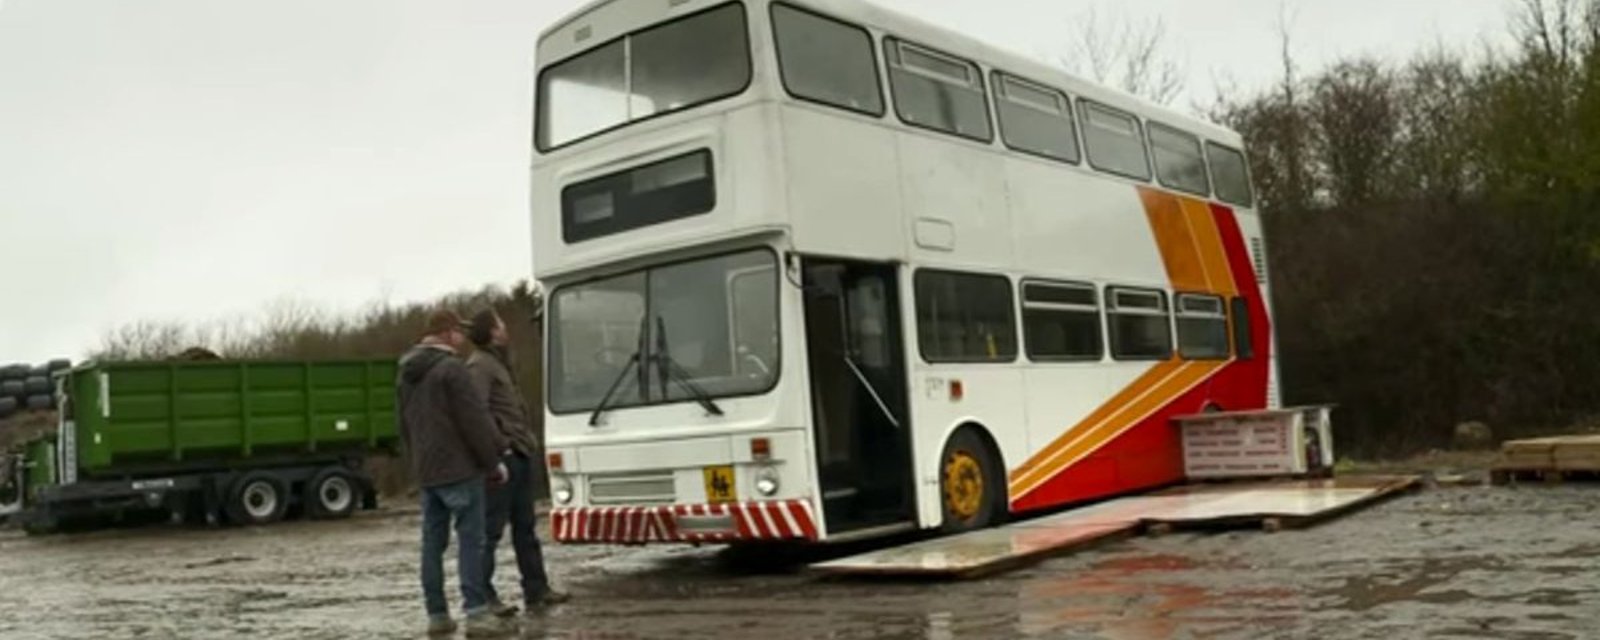 Ce papa célibataire transforme un vieux bus en maisonnette tout confort pour sa fille et lui